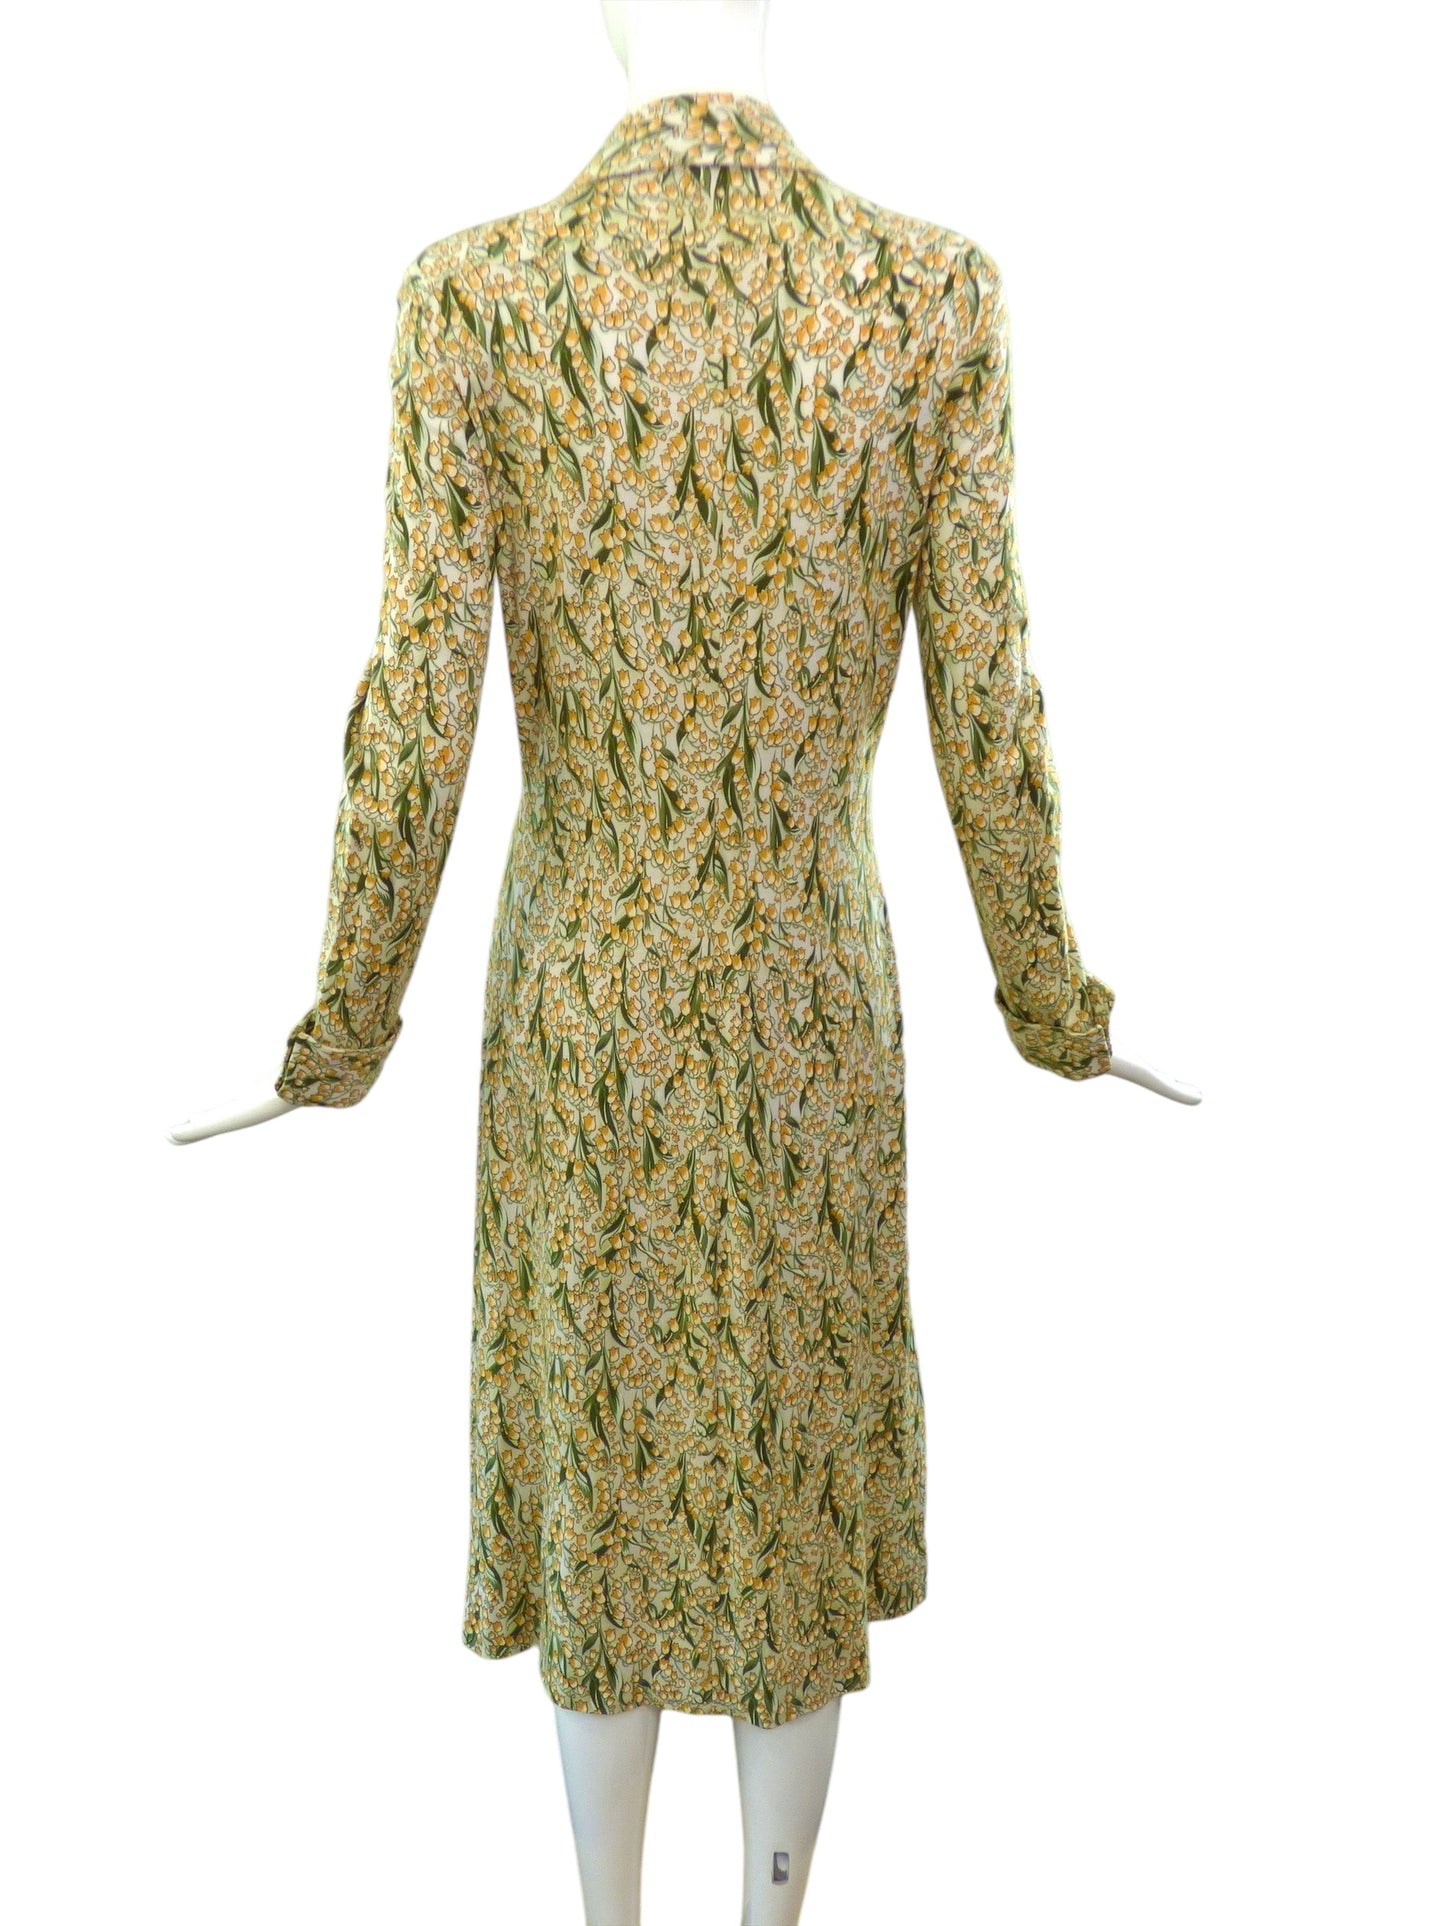 DIANE VON FURSTENBERG- 1970s Floral Dress, Size 8